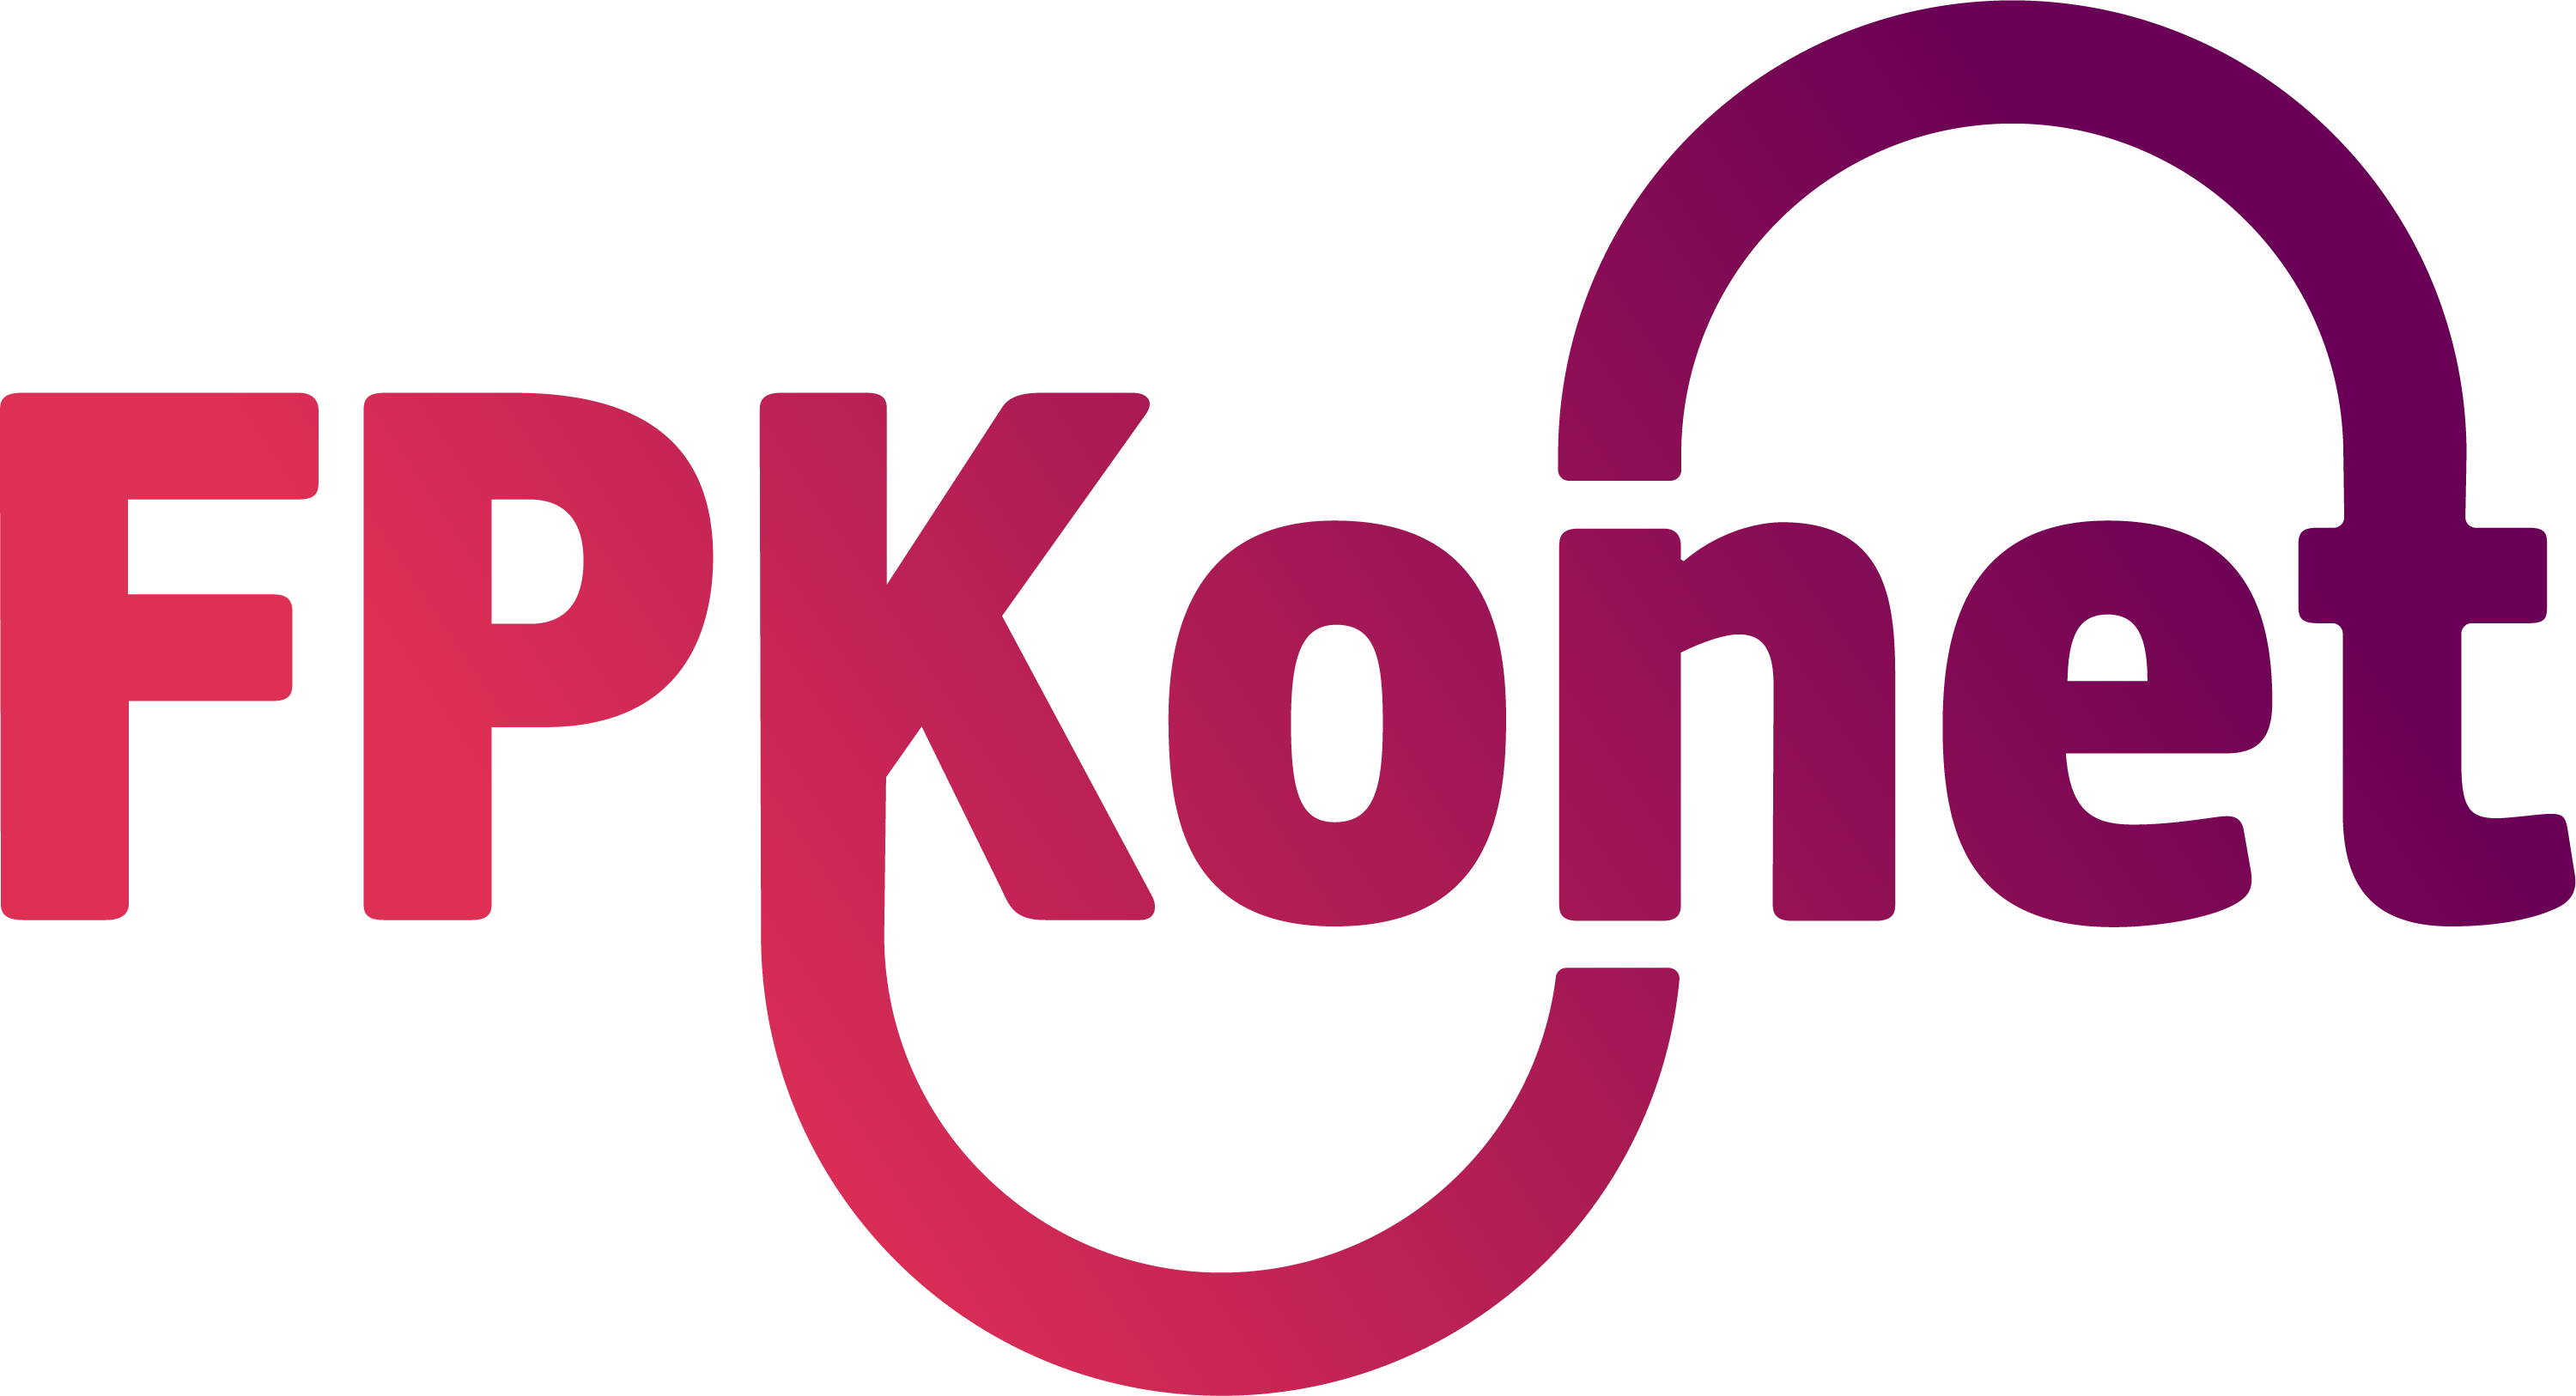 FPKonet logo